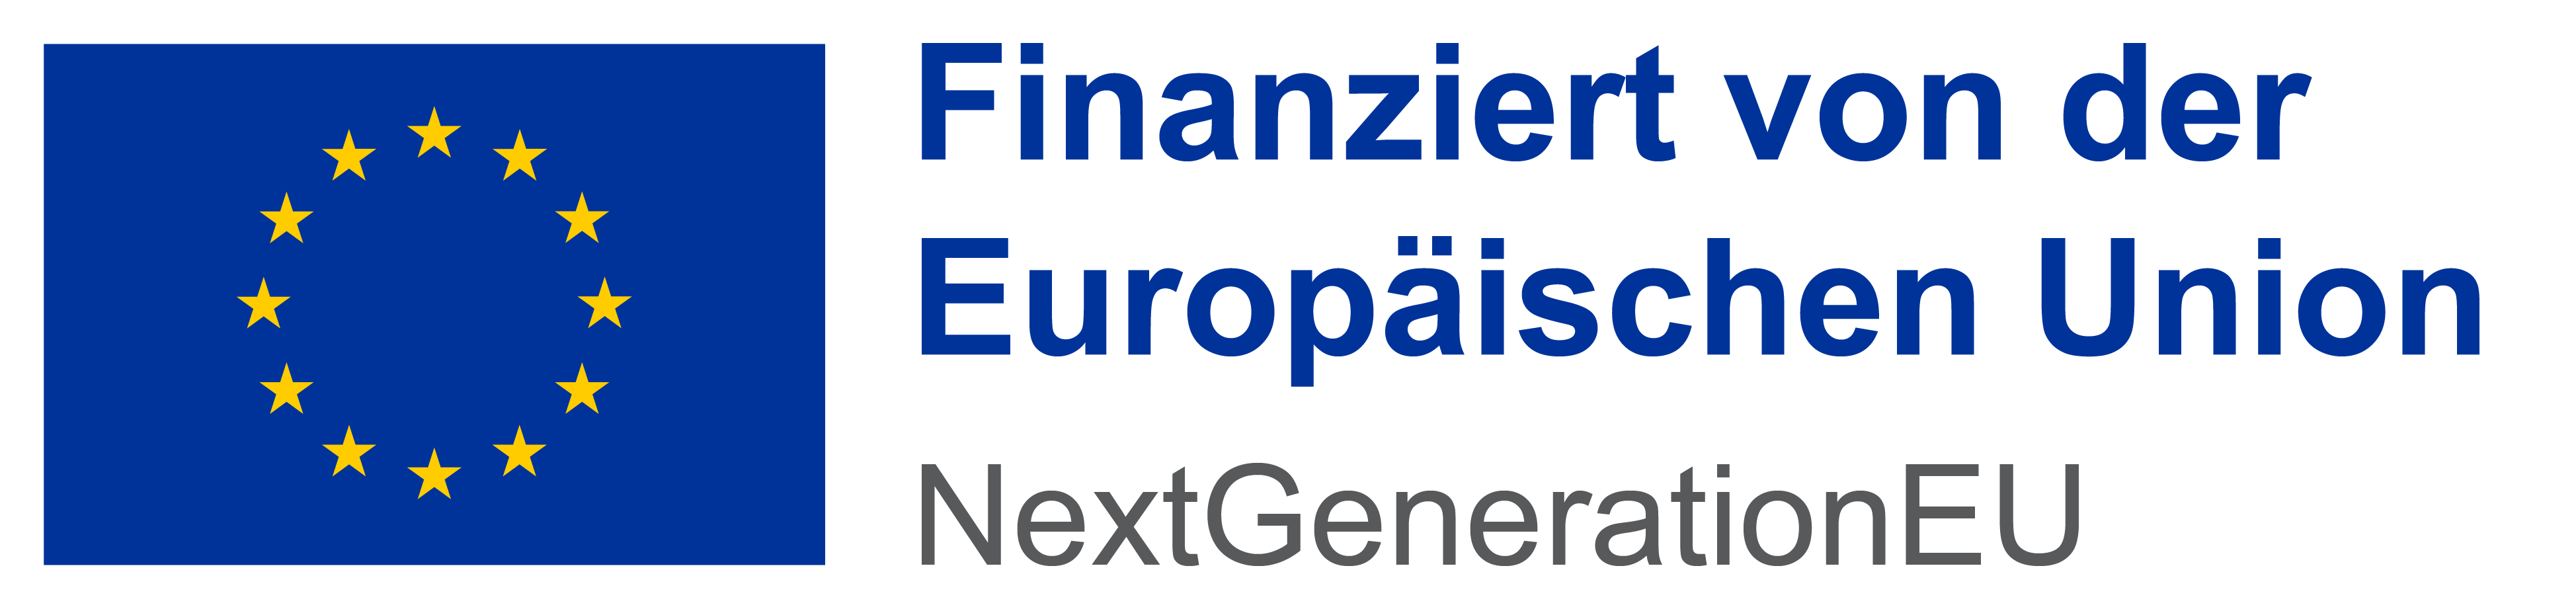 EU-Logo, daneben der Text "Finanziert von der Europäischen Union, NextGenerationEU"